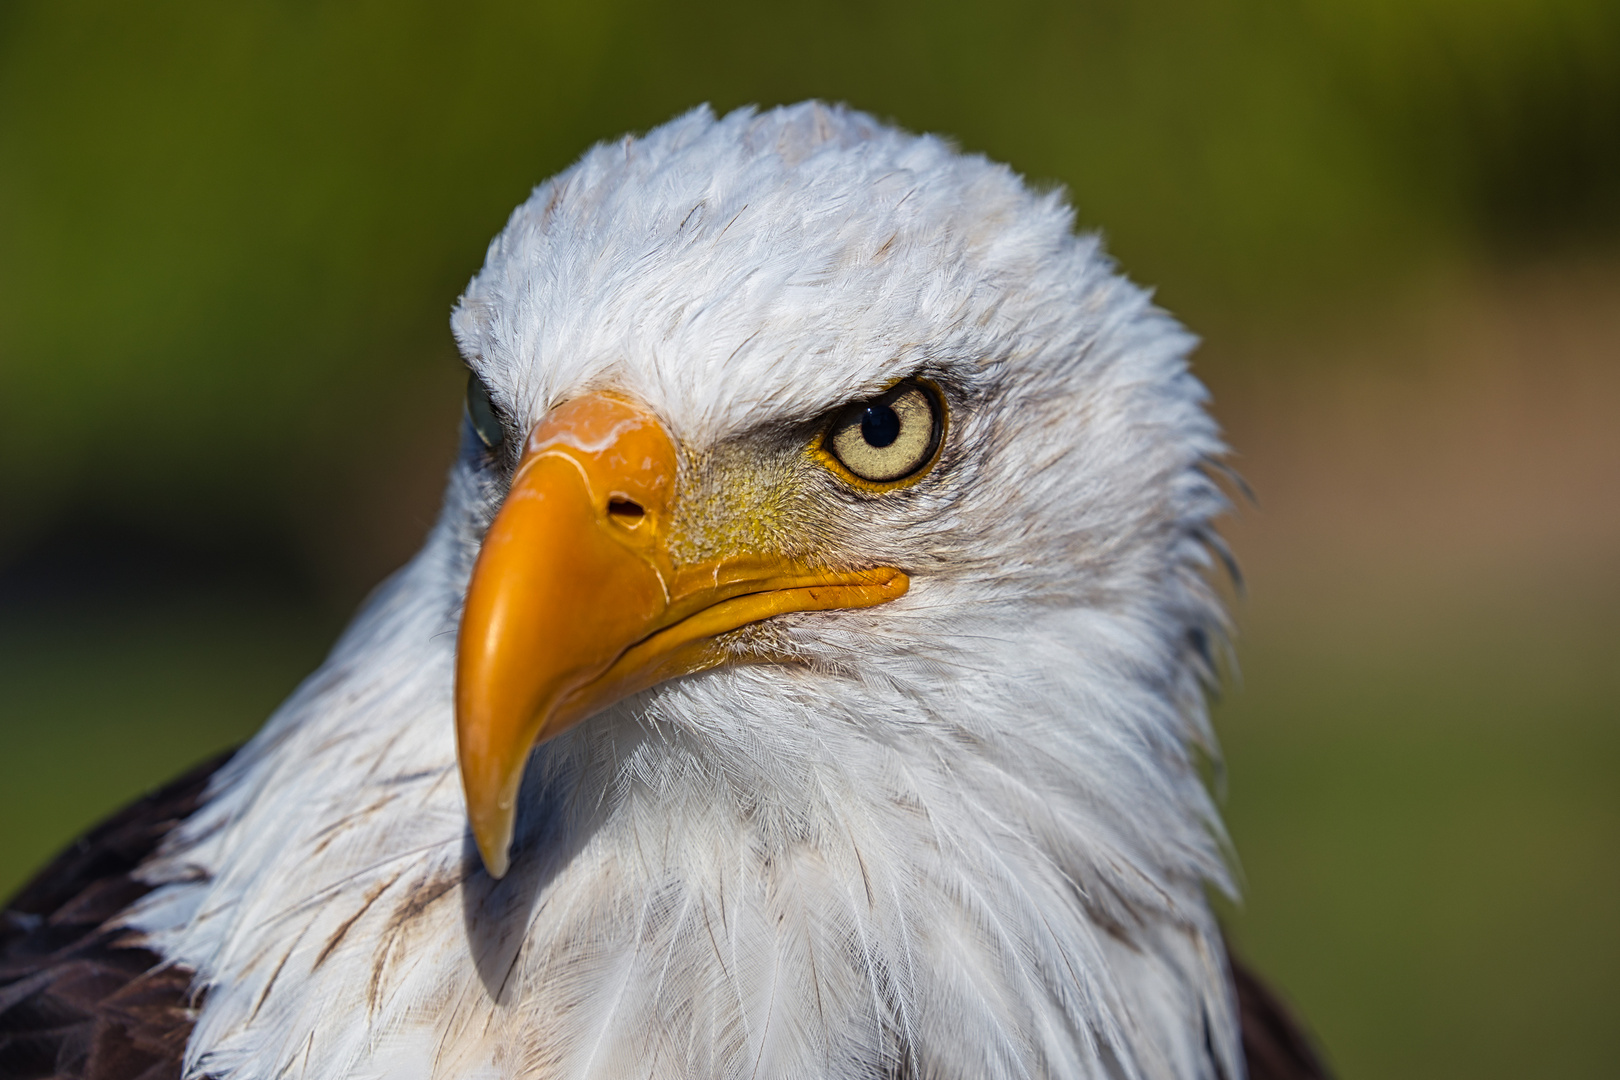 Weißkopfseeadler - Portrait